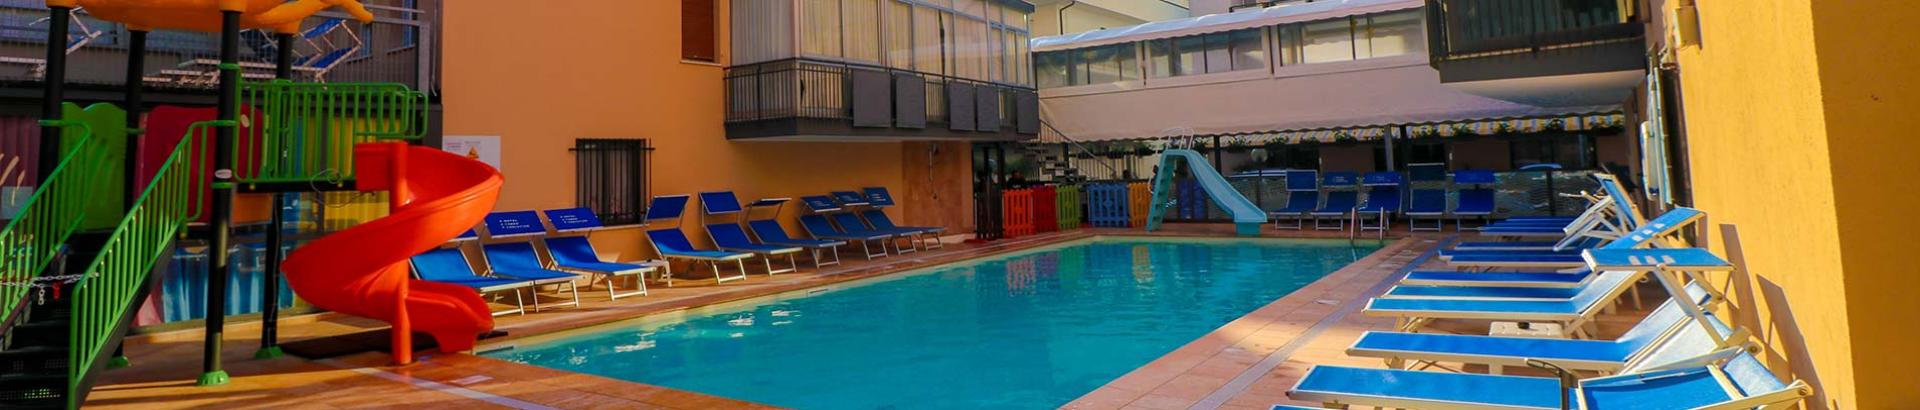 hotelchristianrimini fr avec-piscine 012